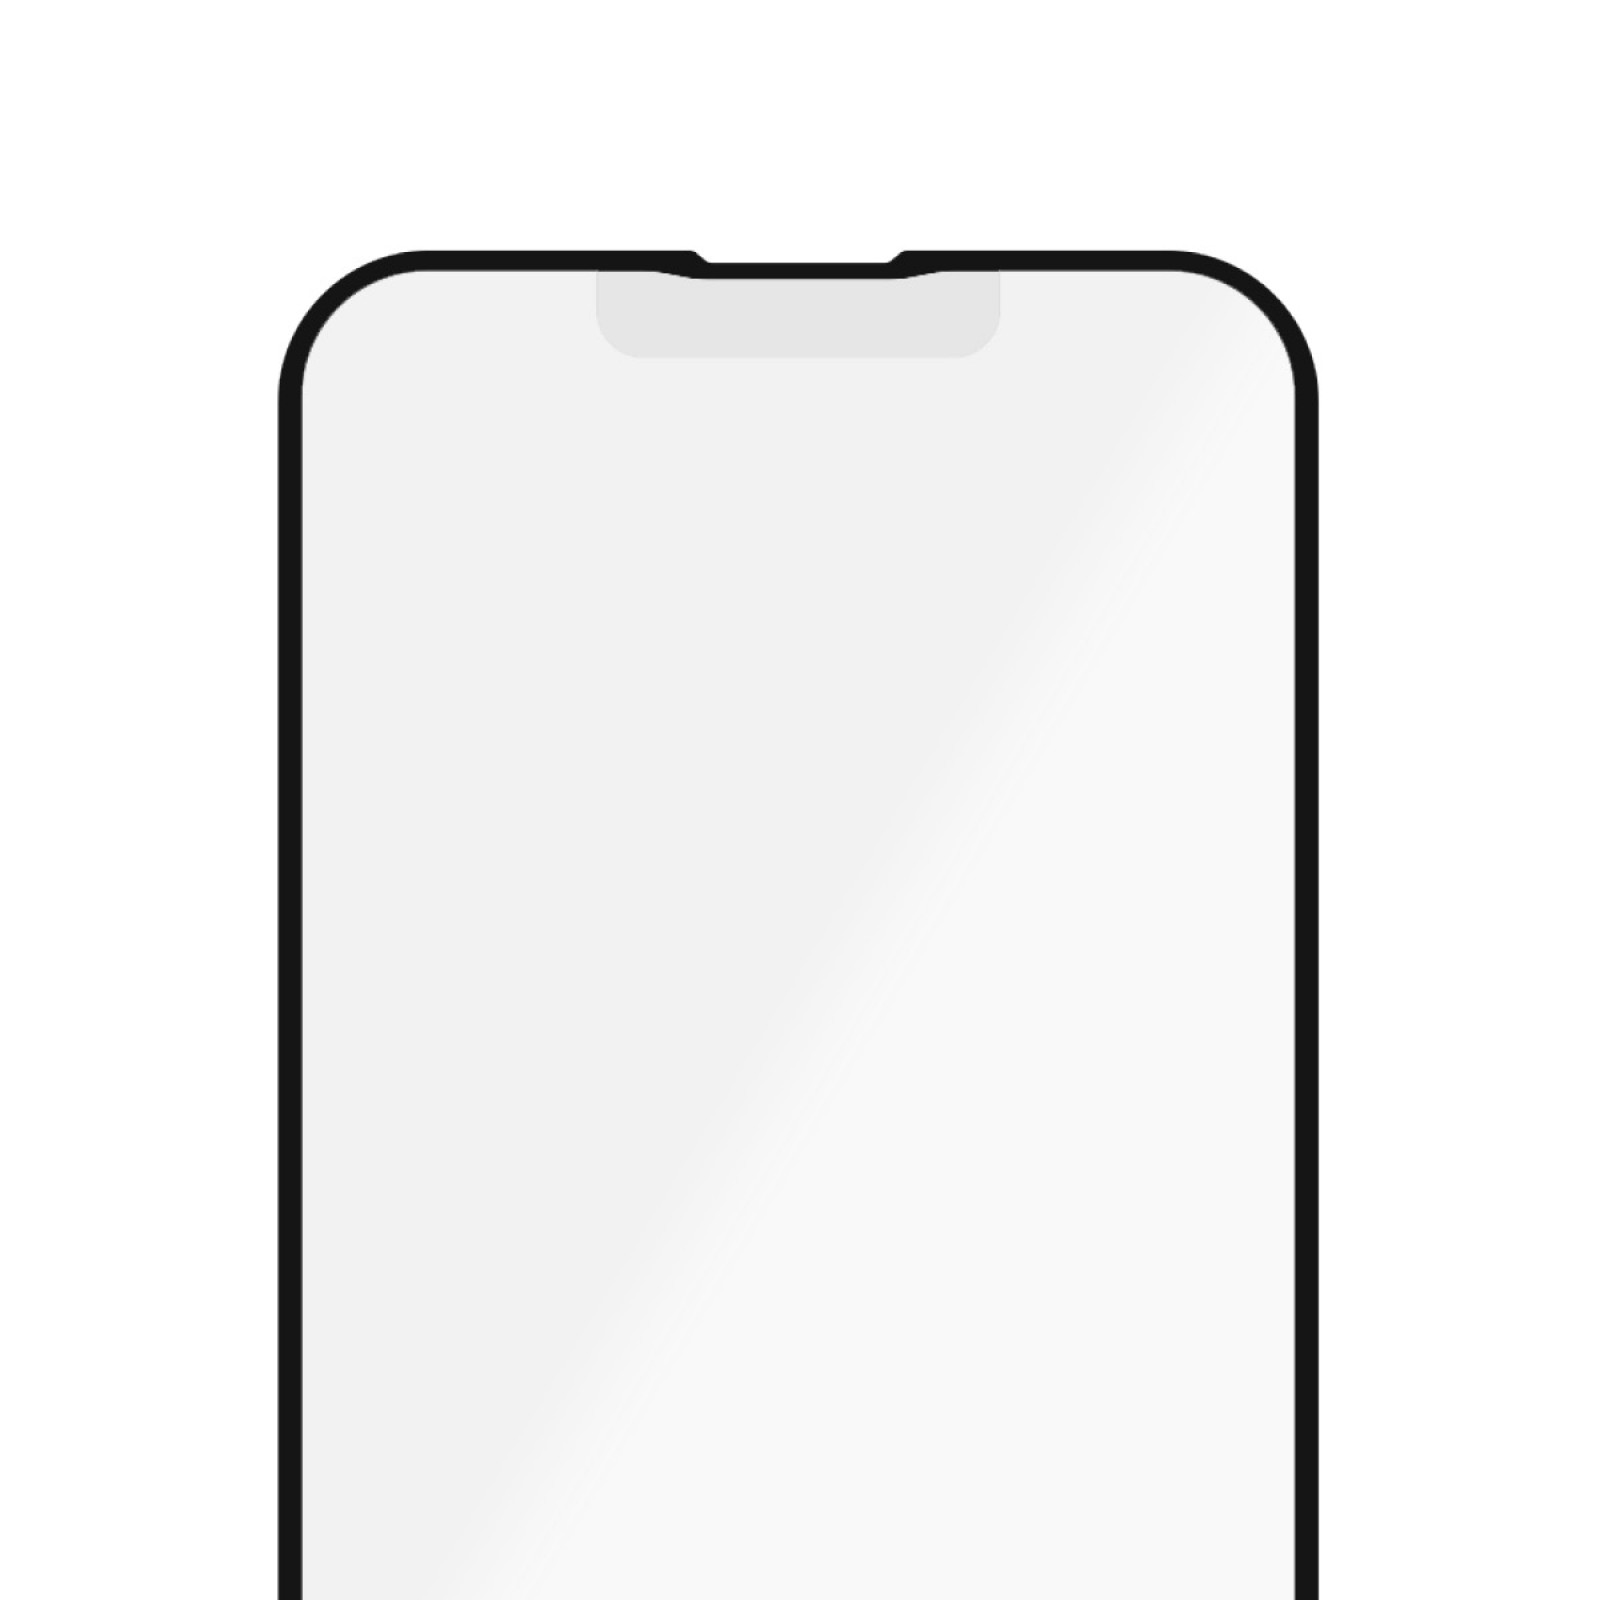 Стъклен протектор PanzerGlass за Apple Iphone 13 / 13 Pro, AntiGlare, CaseFriendly, Antibacterial, Черен